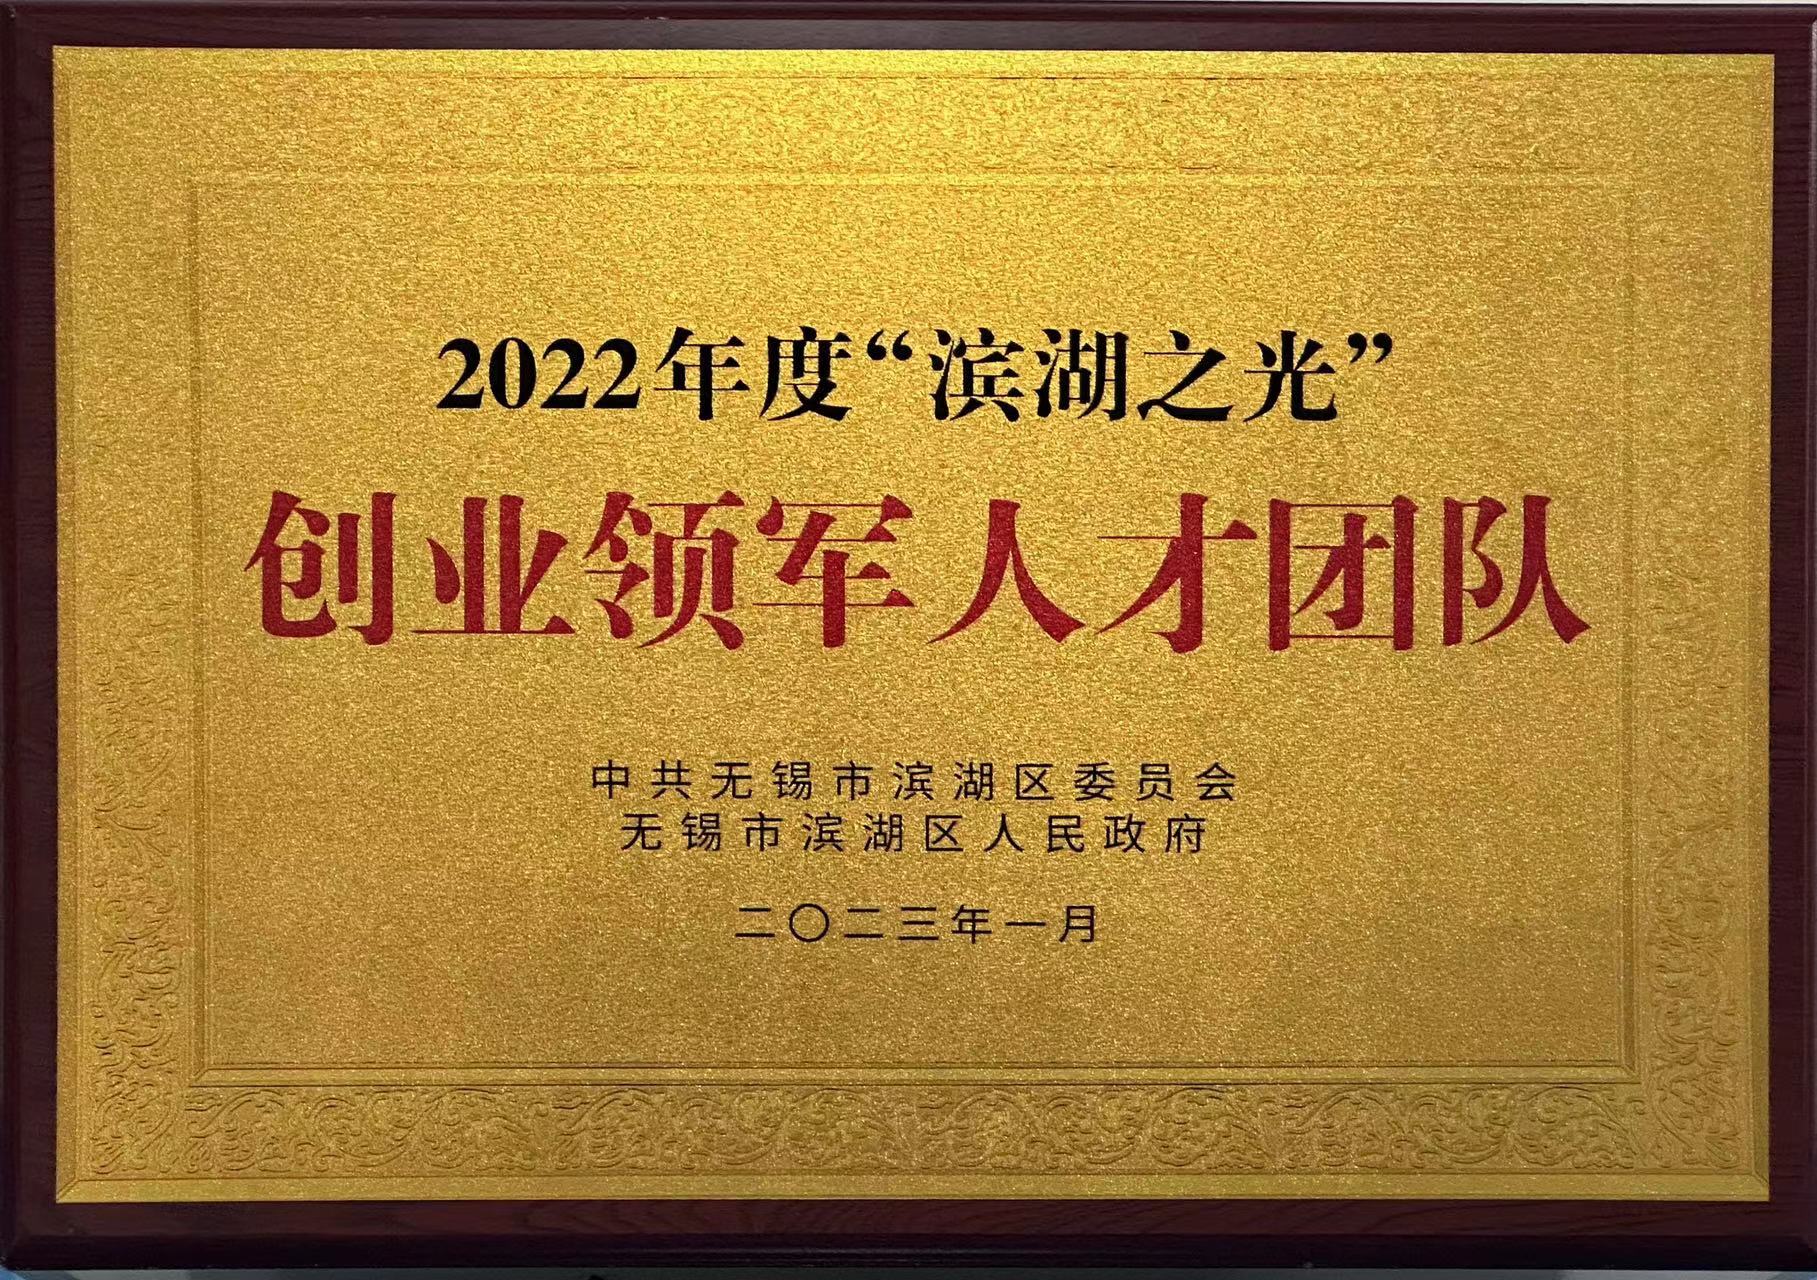 2022年度“滨湖之光”创业领军人才团队